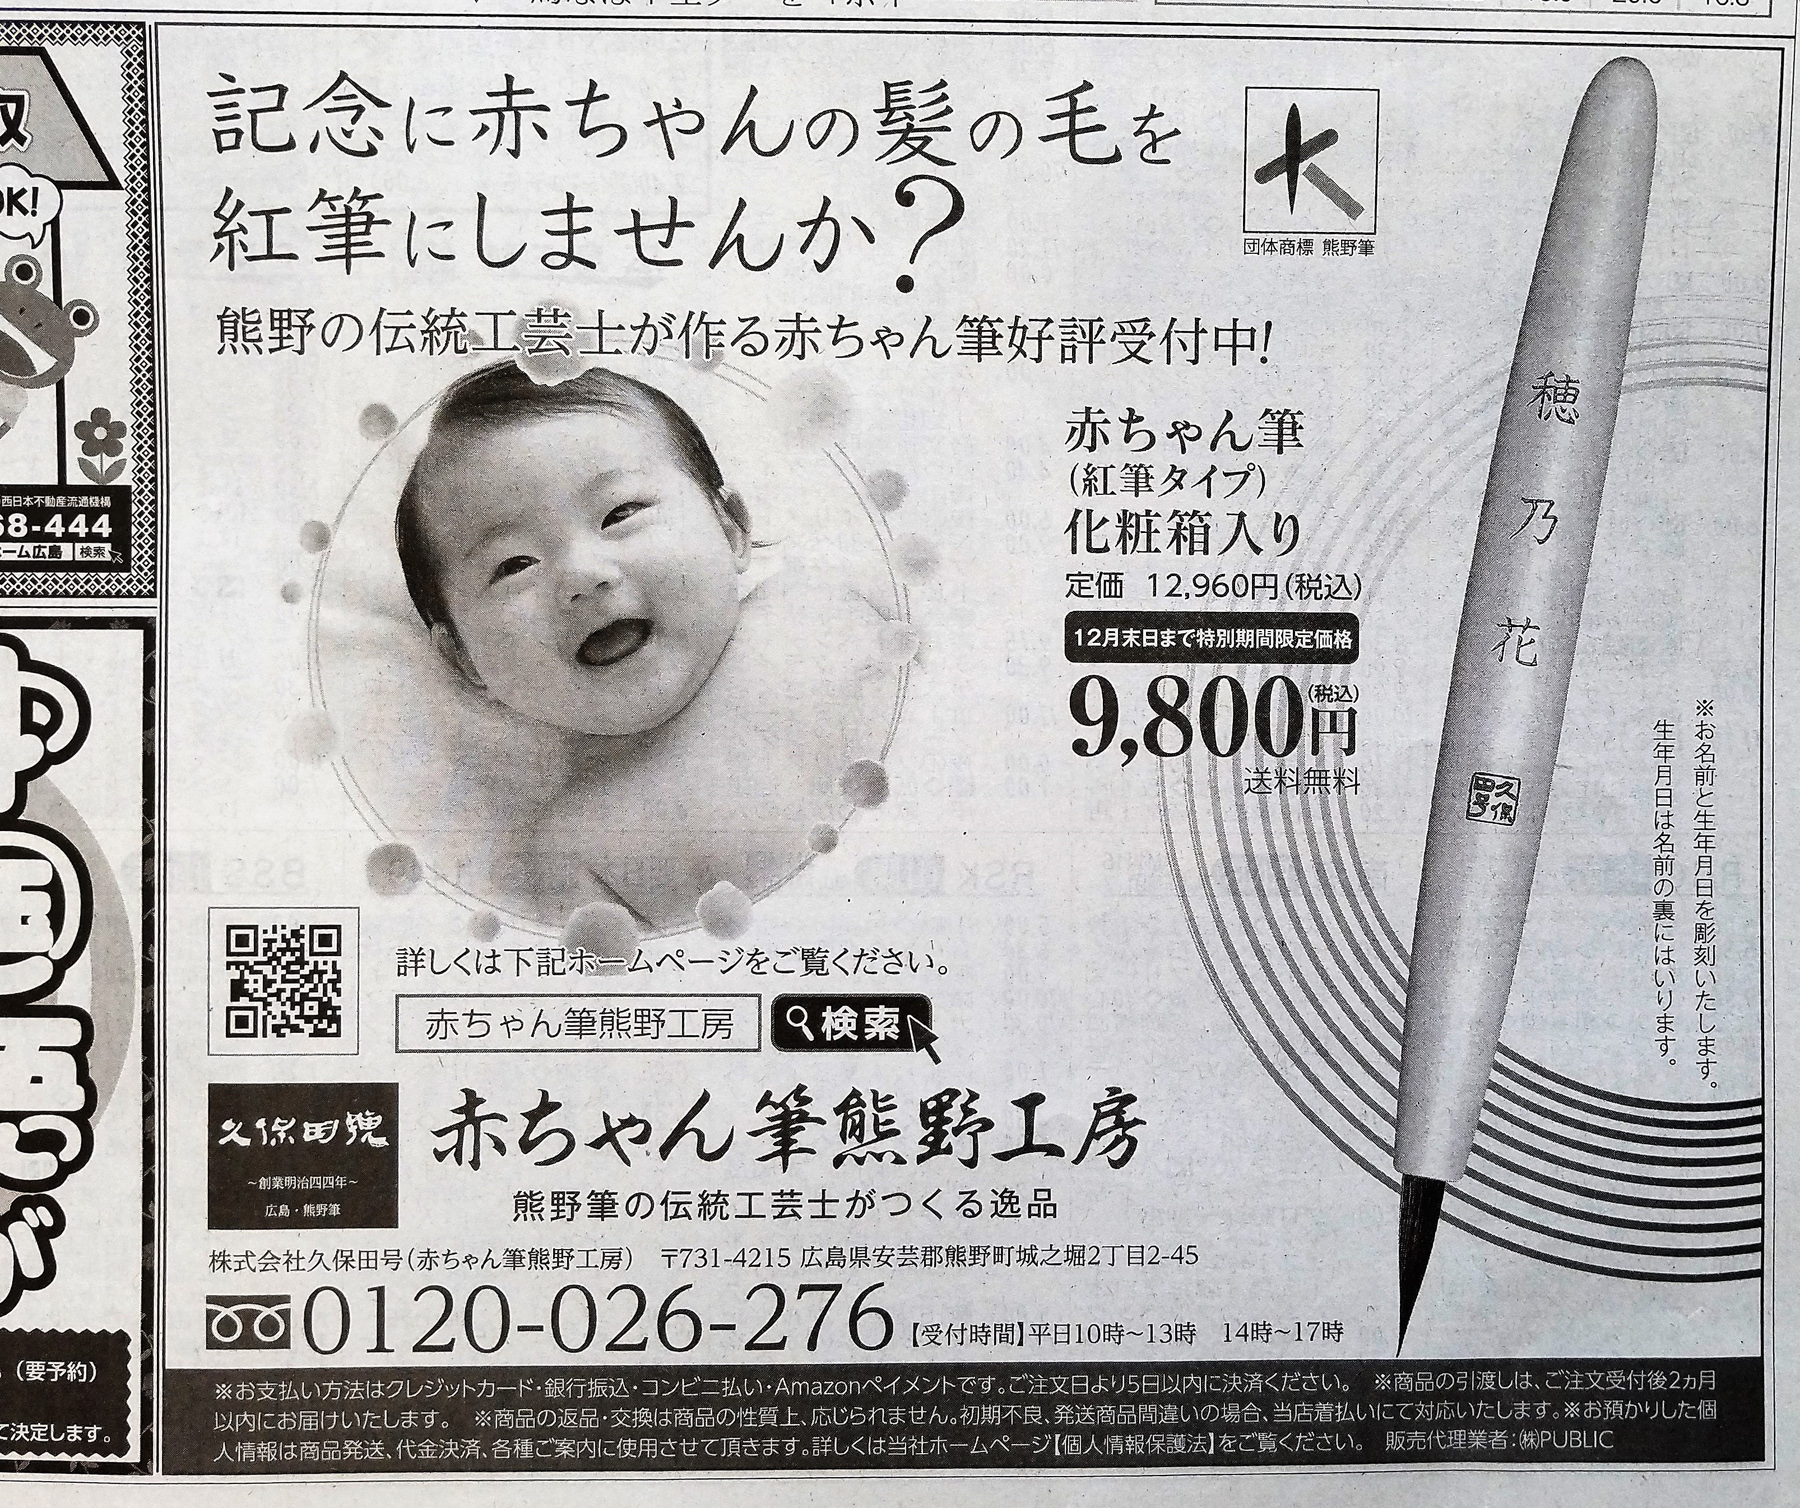 化粧用の筆として使える紅筆を新聞広告掲載しました。